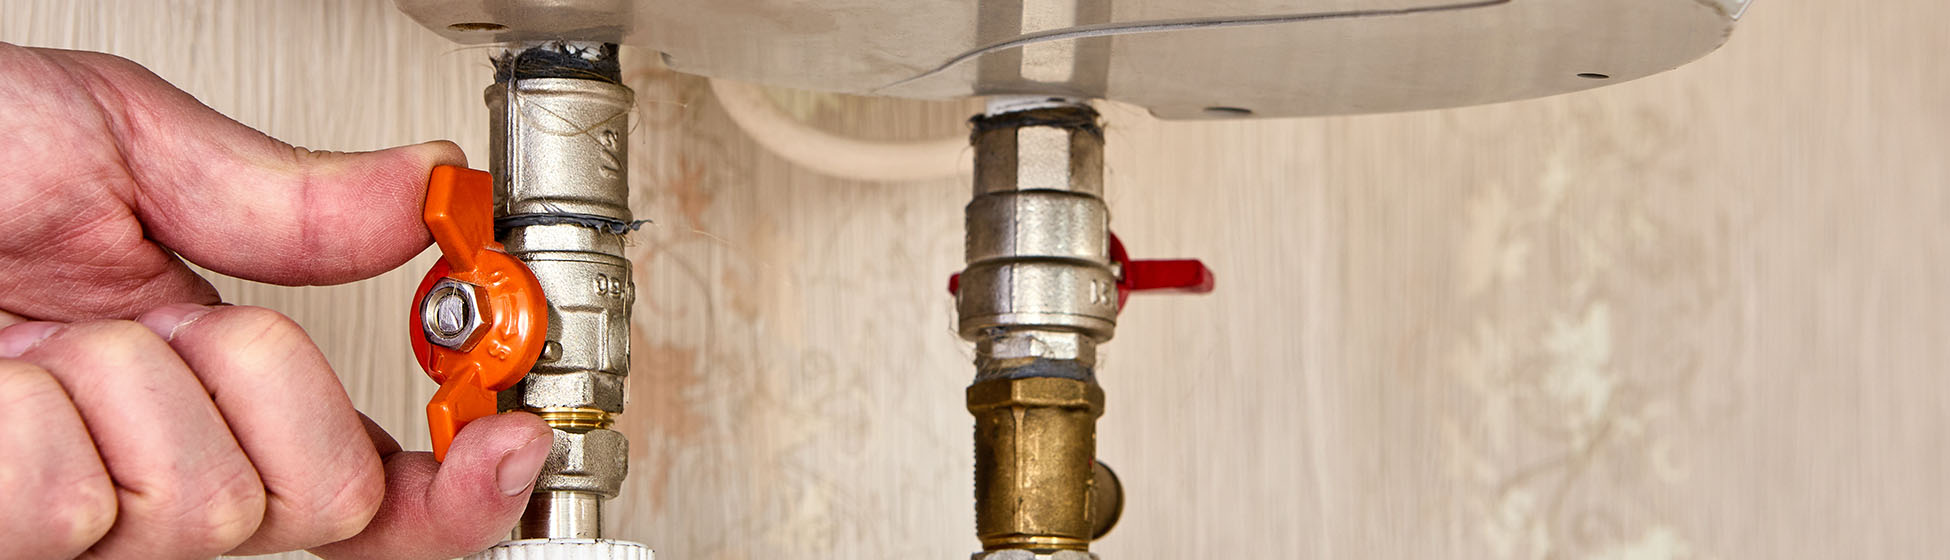 Installation vase d expansion chauffe eau